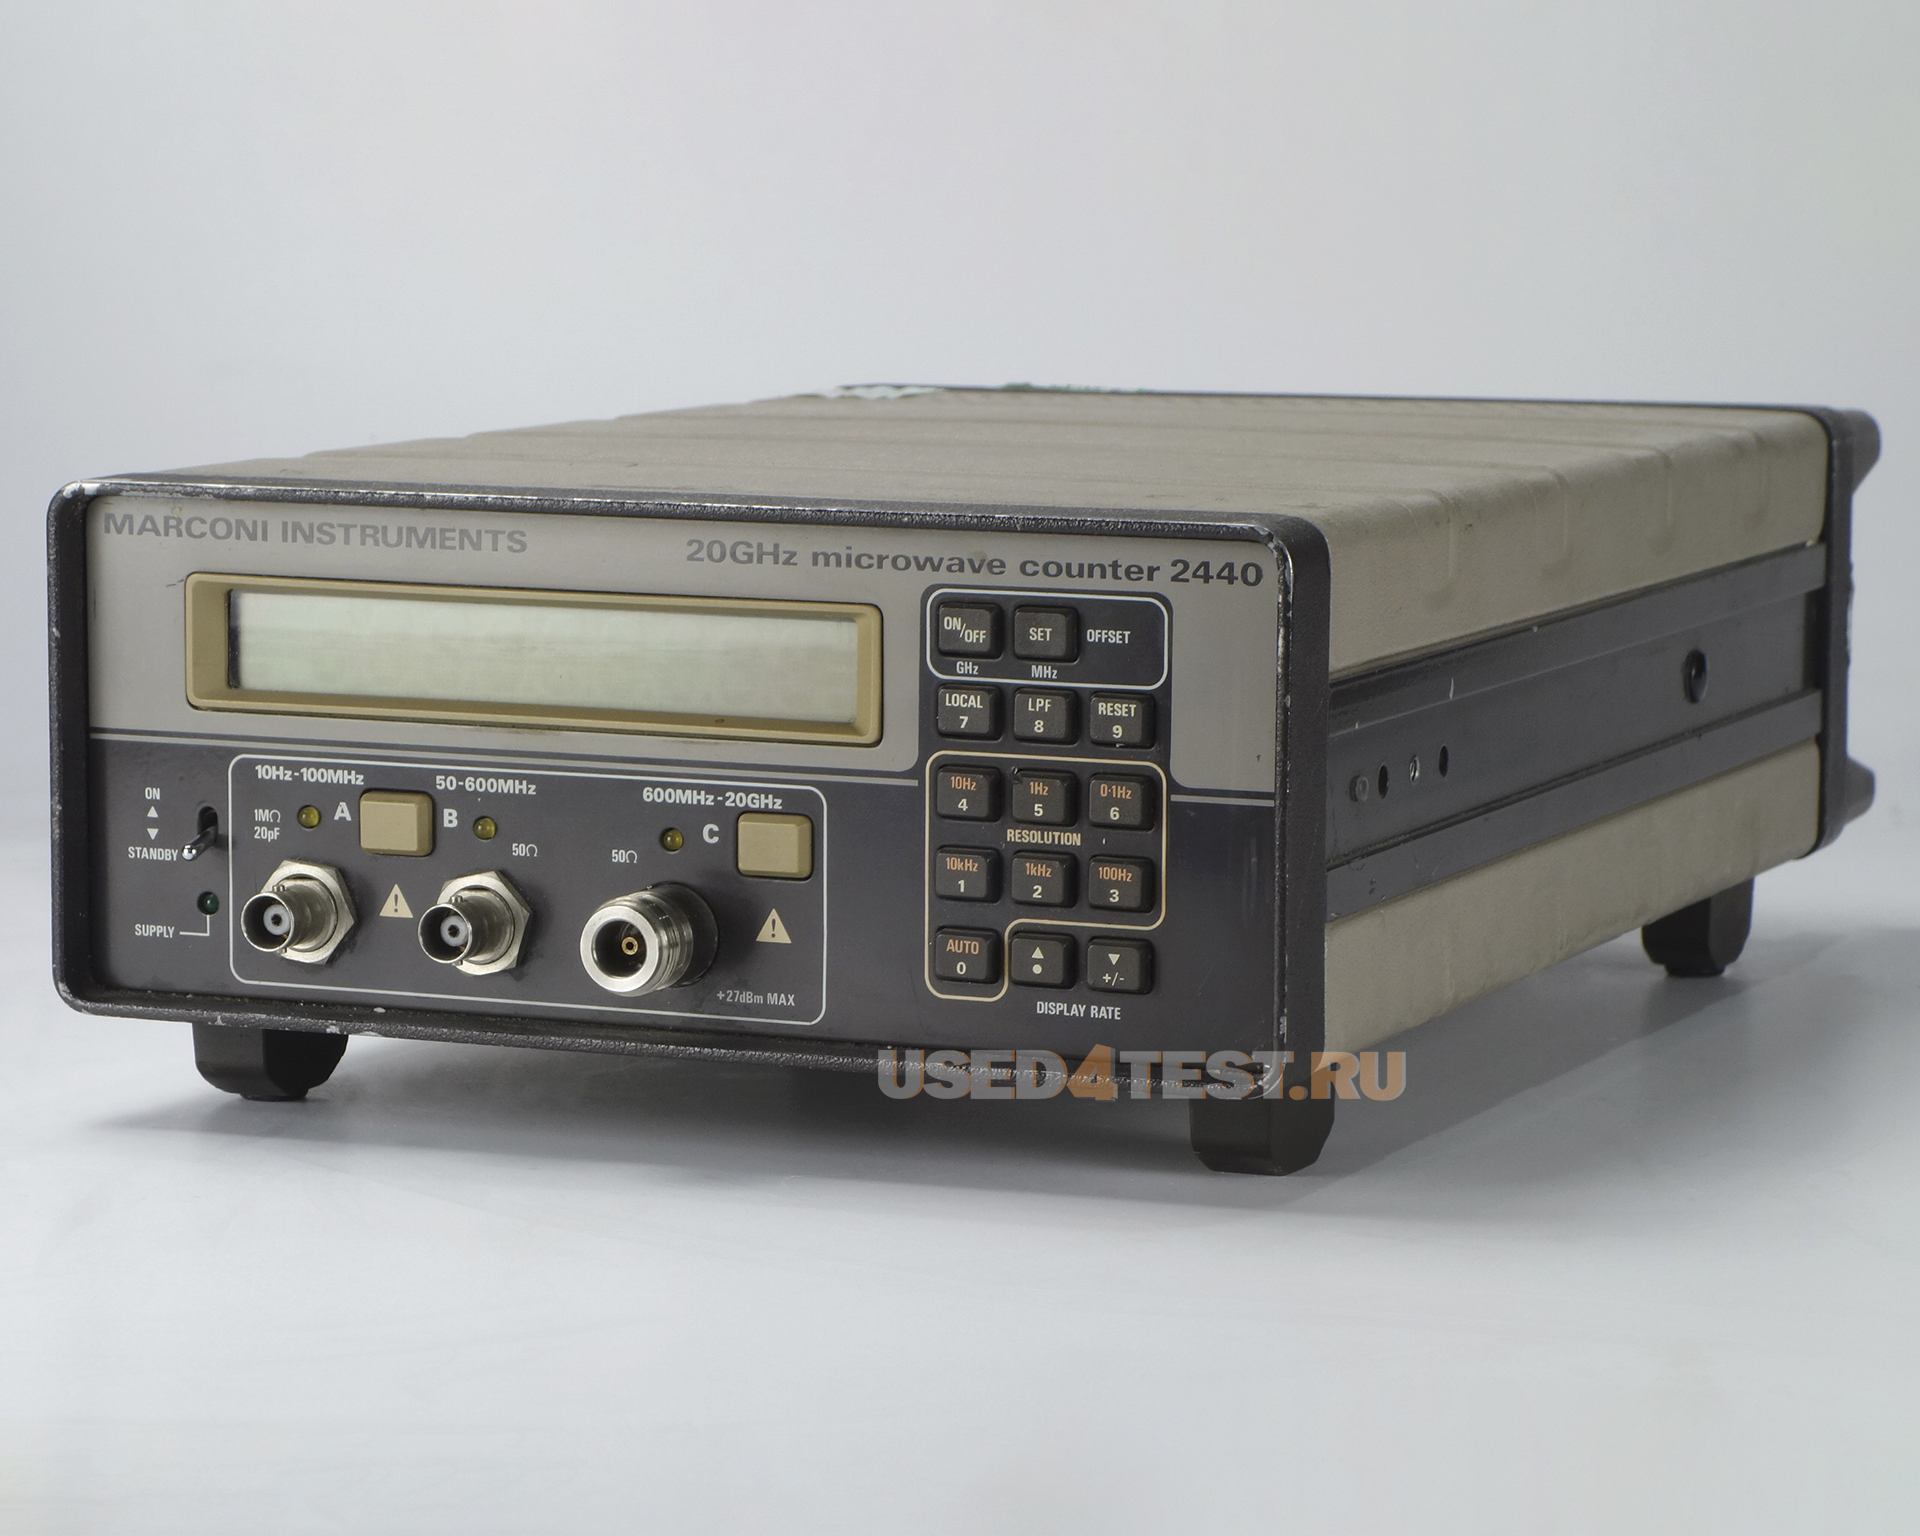 Частотомер Marconi 2440с диапазоном от 10 Гц до 20 ГГц
 Стоимость указана в Рублях DDP Москва по безналичному расчету включая НДС 20%
